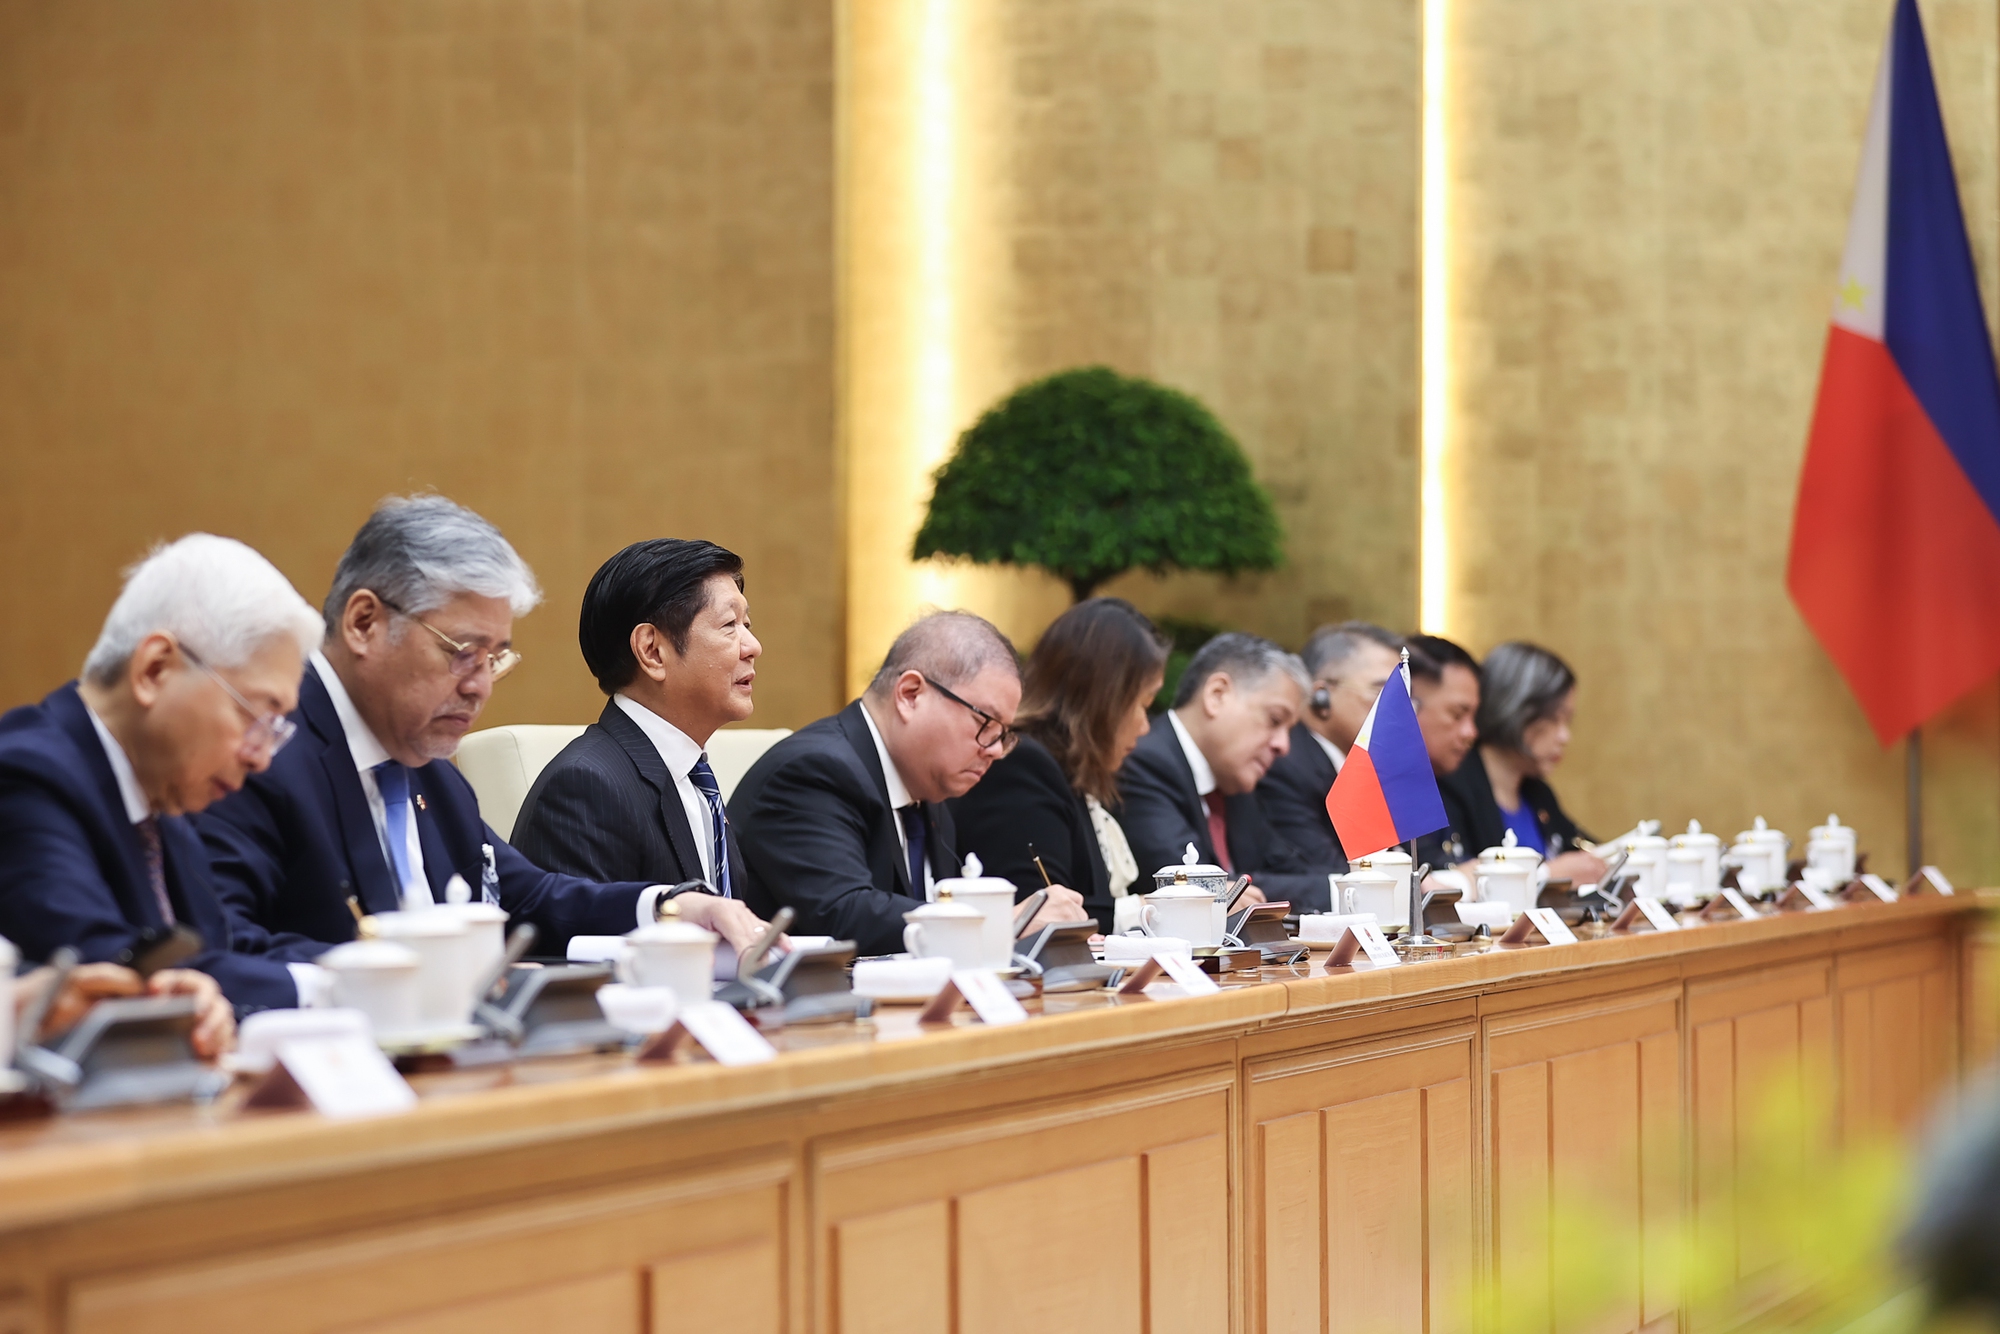 Tổng thống Marcos Jr. nhất trí với đề nghị của Thủ tướng Phạm Minh Chính về việc đẩy mạnh hợp tác trên các lĩnh vực còn nhiều tiềm năng - Ảnh: VGP/Nhật Bắc